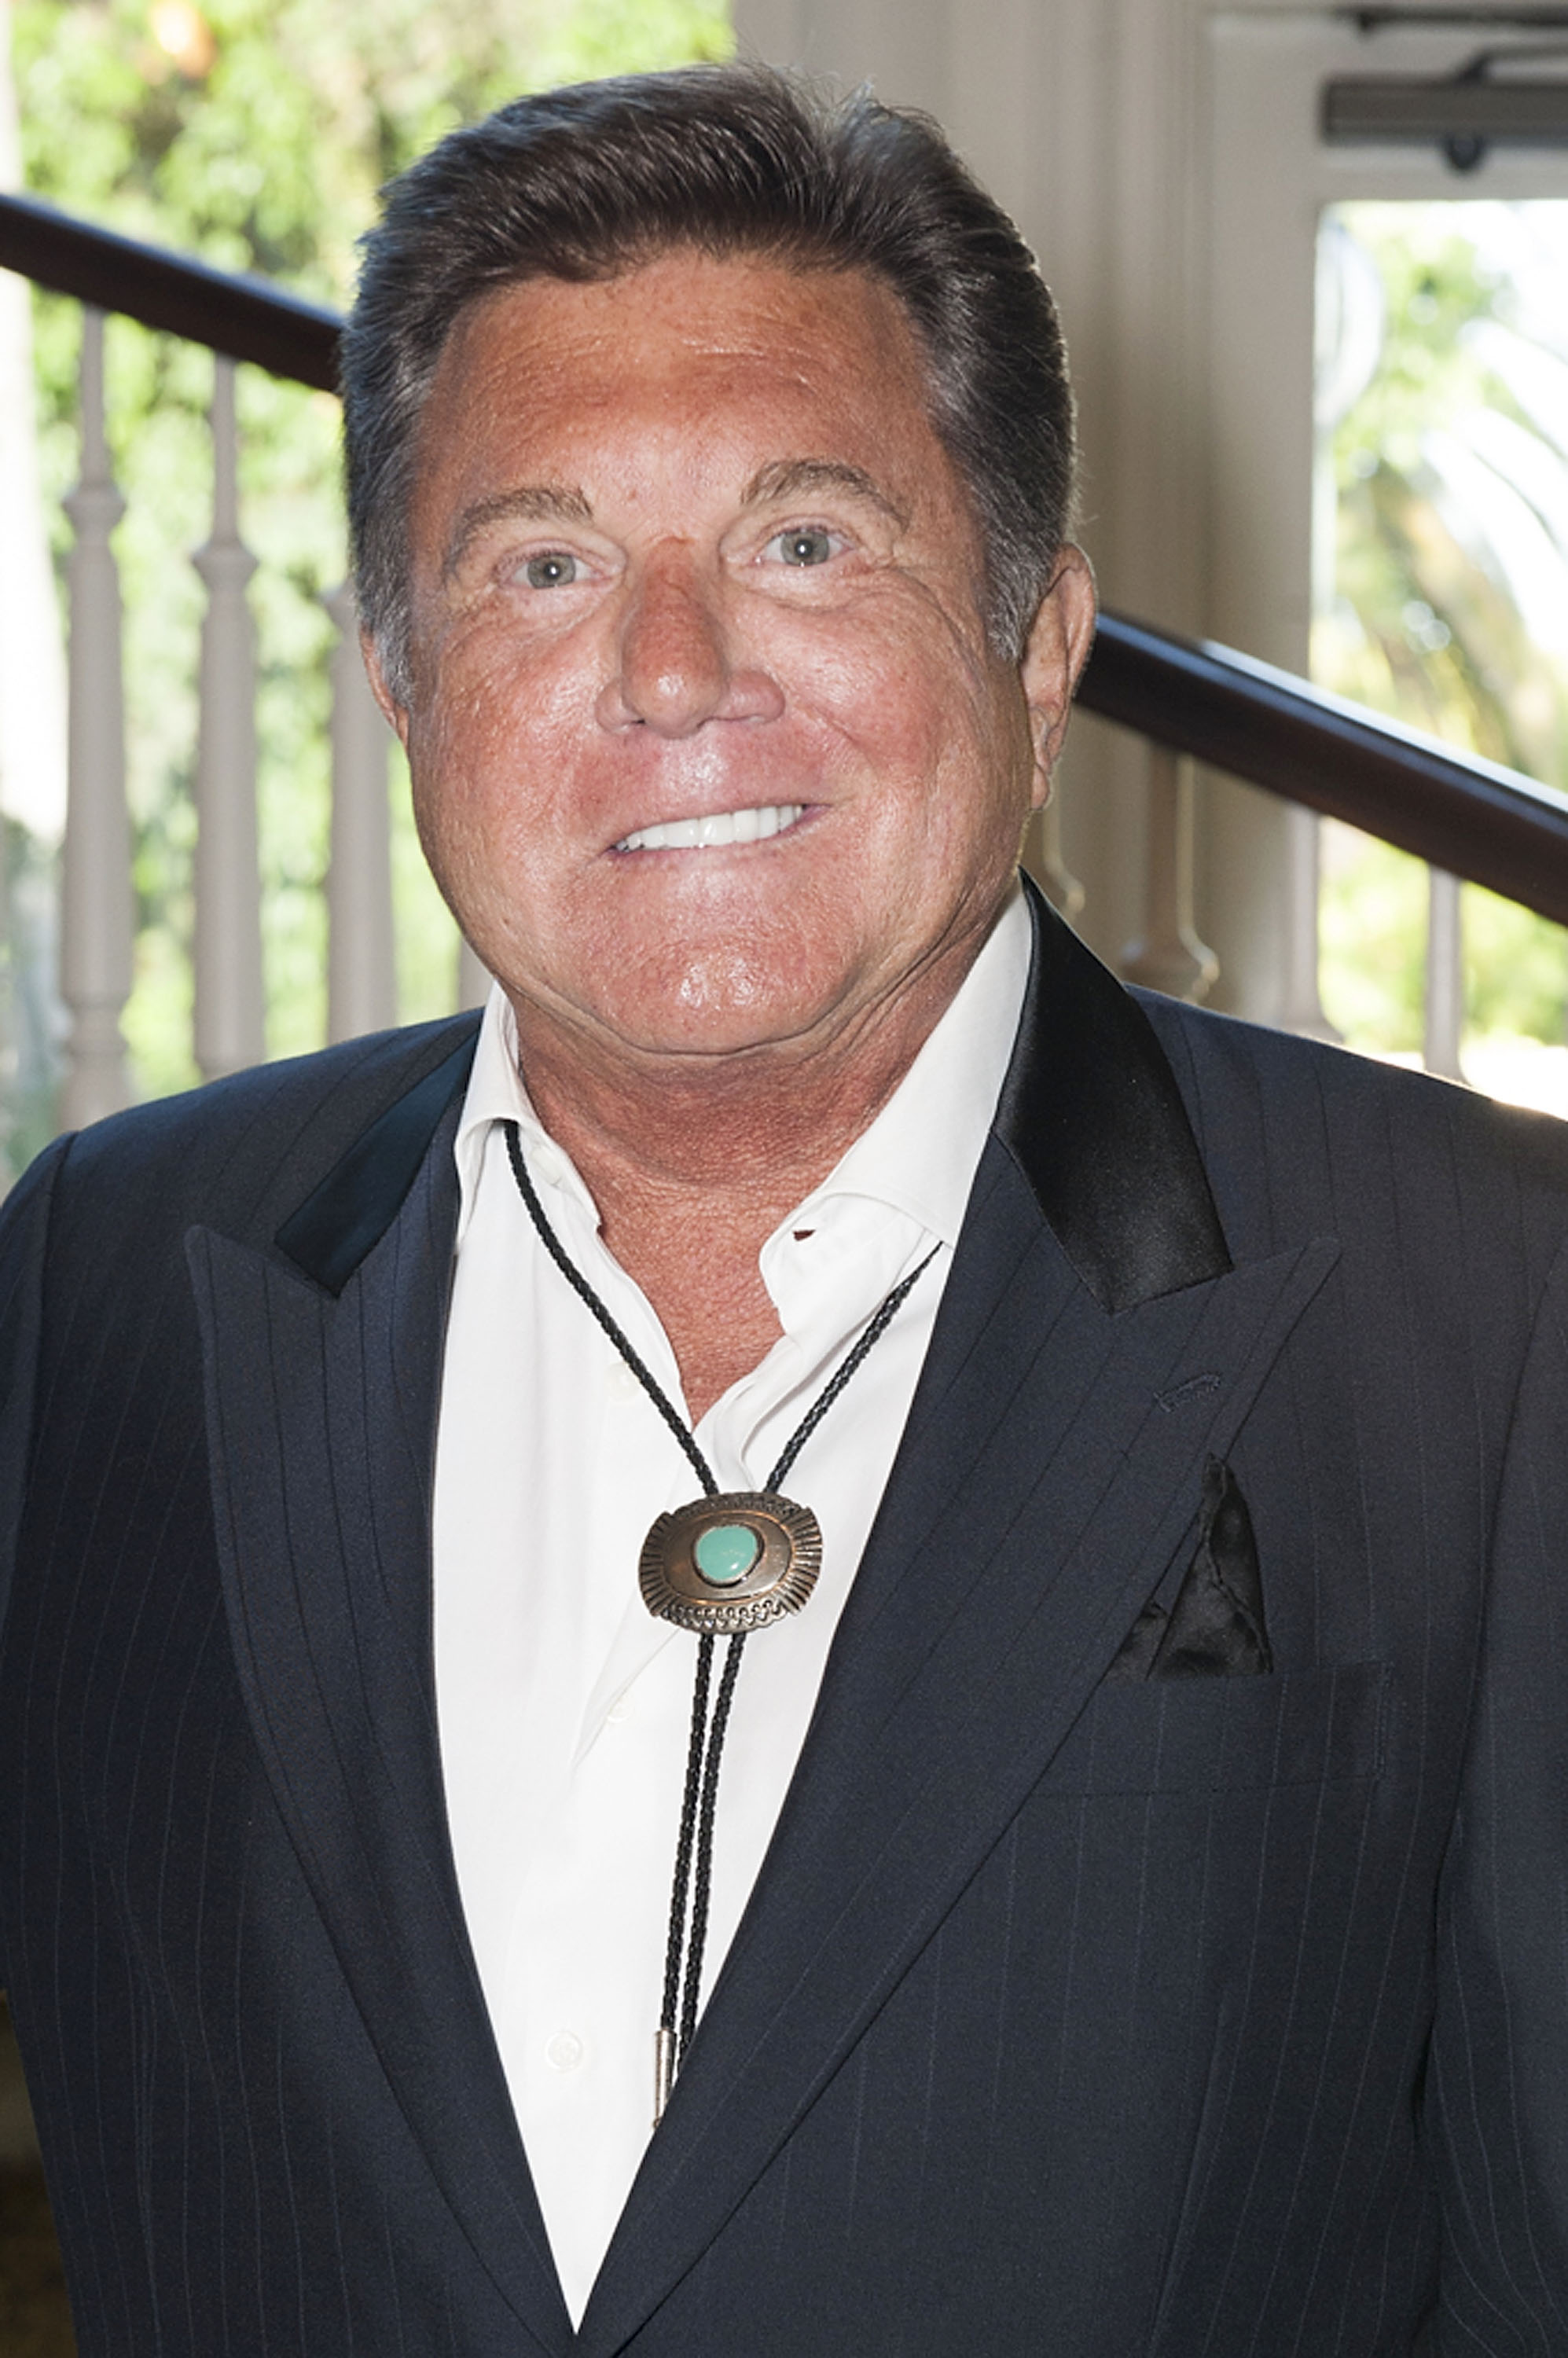 El actor Larry Manetti asiste a la 16ª edición anual de los Silver Spur Awards organizada por The Reel Cowboys en The Sportsman's Lodge el 27 de septiembre de 2013 en Studio City, California. | Foto: Getty Images